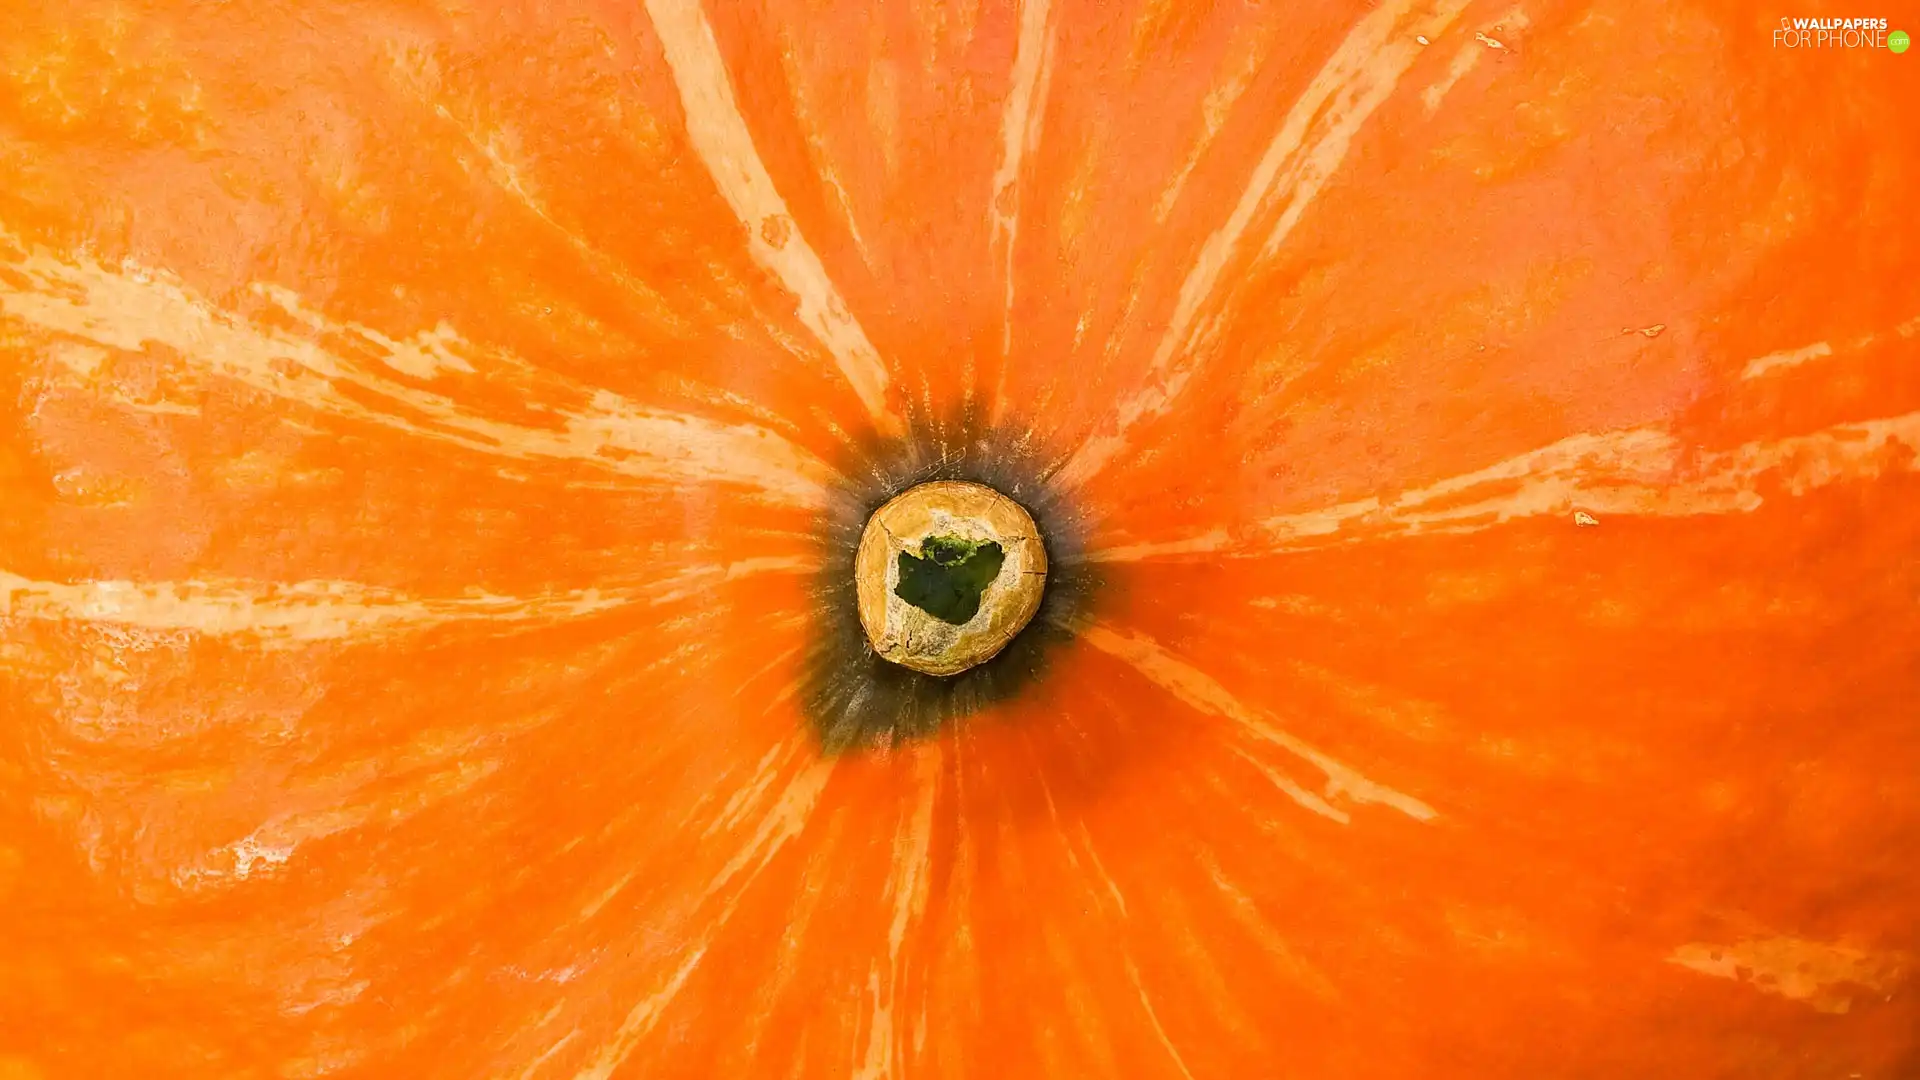 Centre, pumpkin